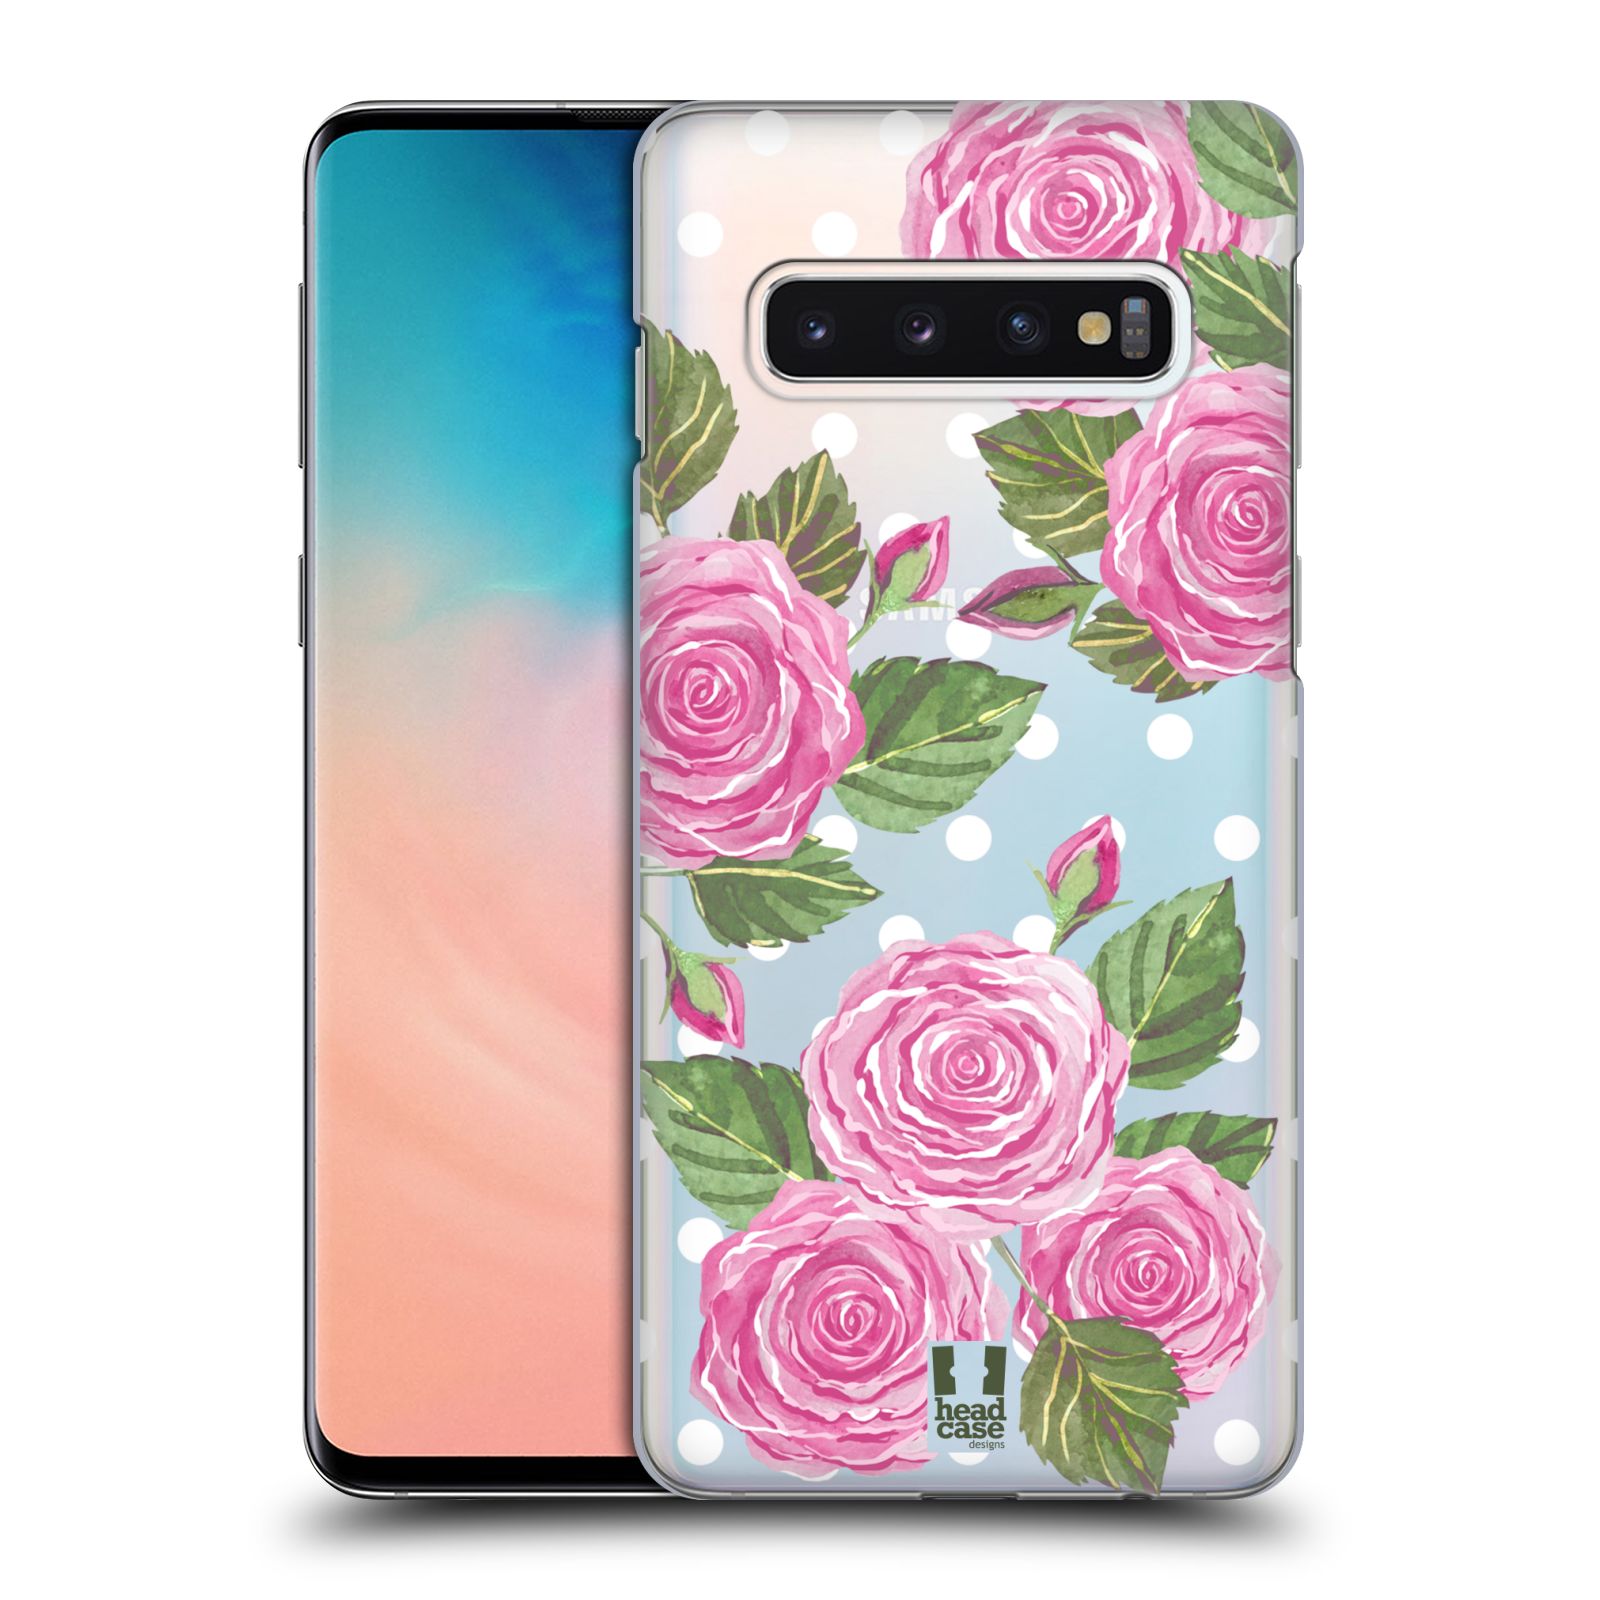 Pouzdro na mobil Samsung Galaxy S10 - HEAD CASE - Anglické růže růžová barva